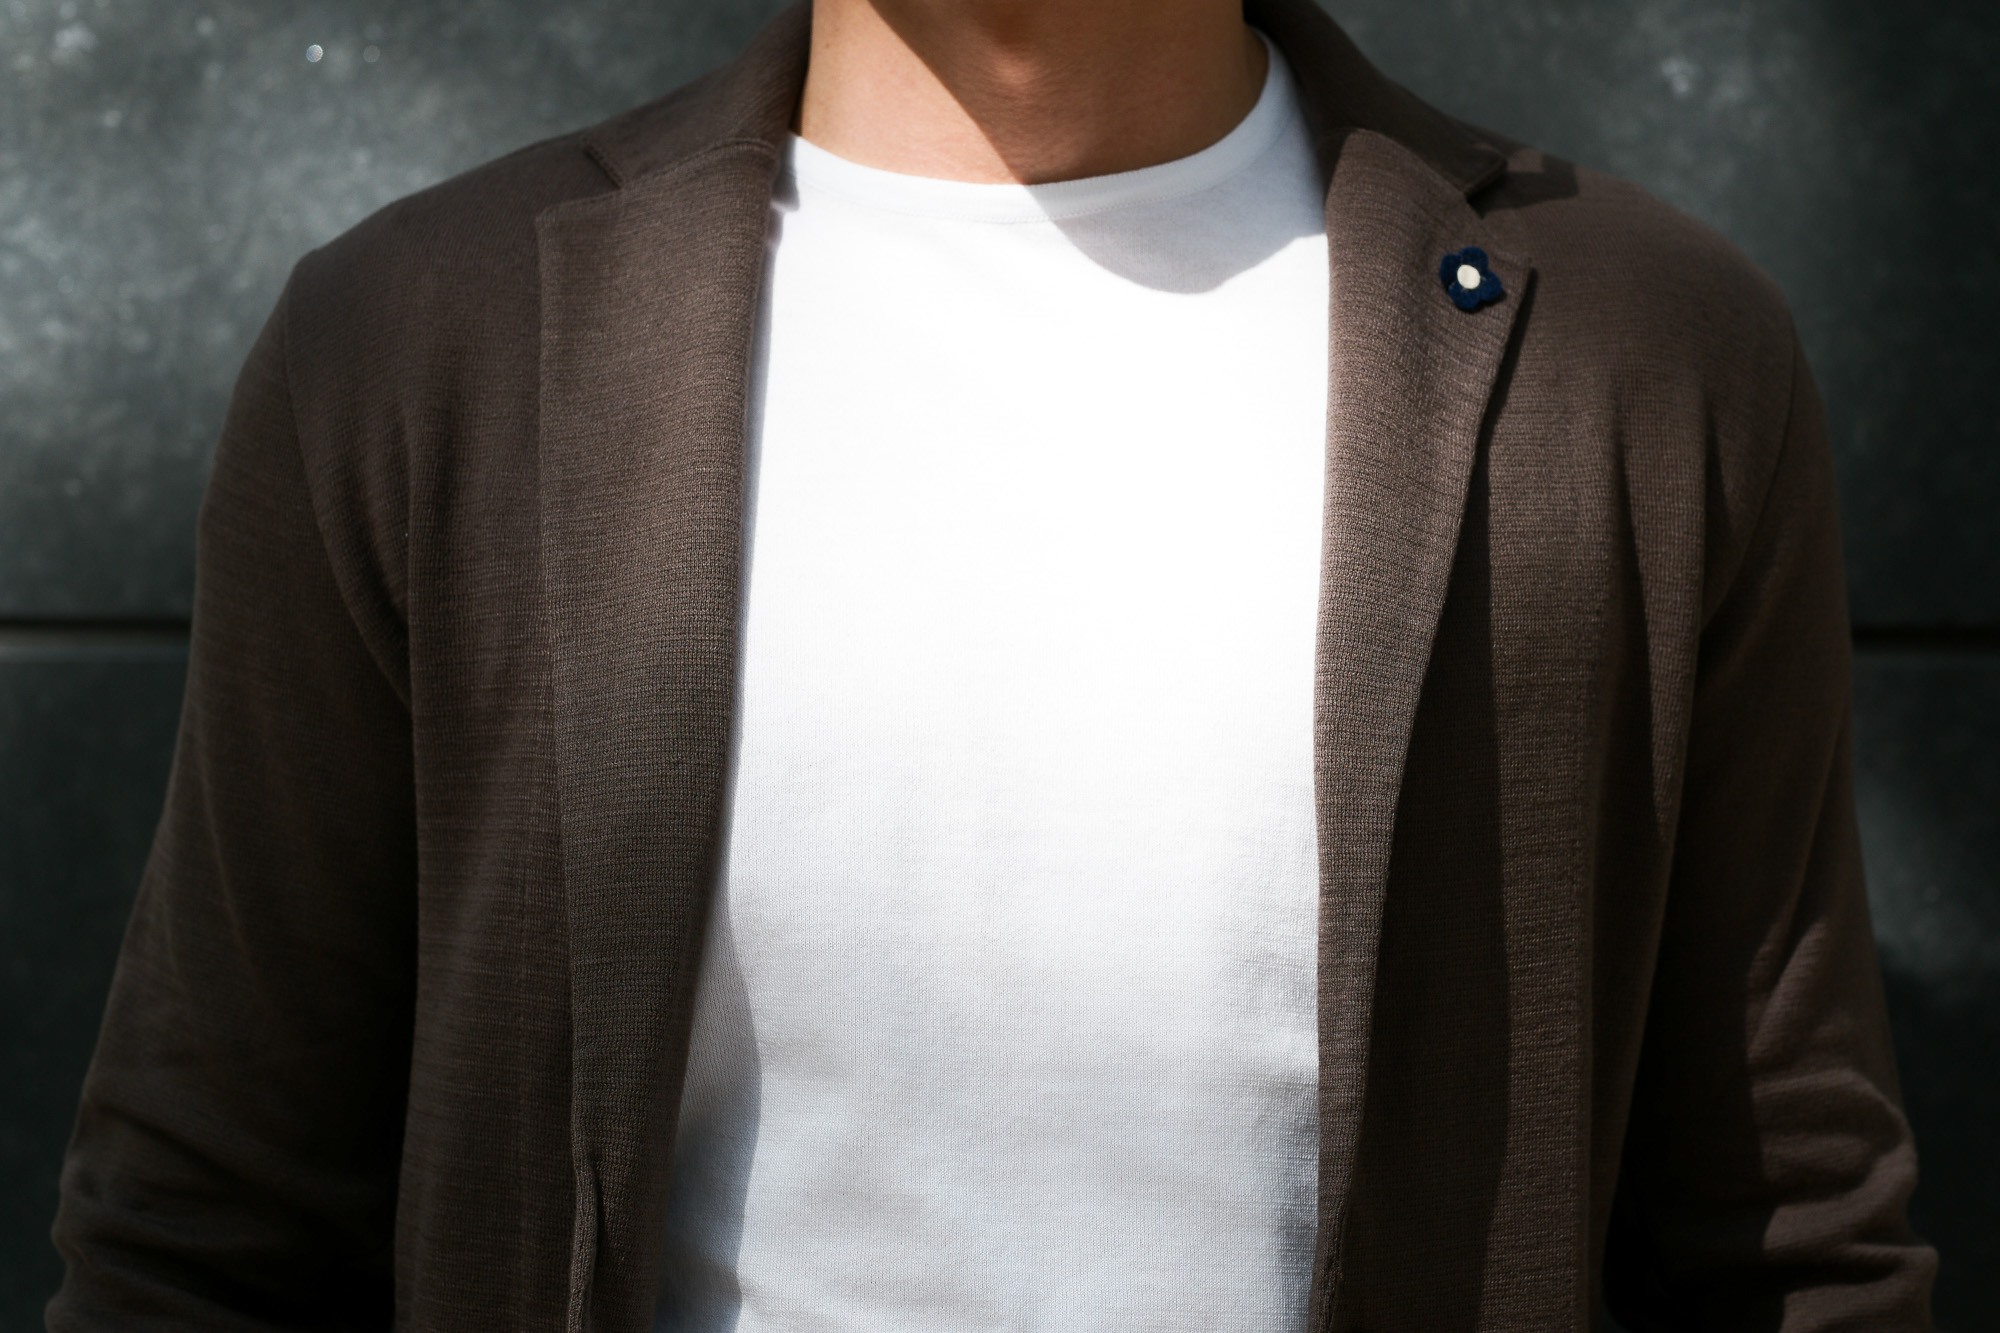 LARDINI (ラルディーニ) Milano Rib Knit Jacket (ミラノリブ ニット ジャケット) コットン ミラノリブ 2B ニットジャケット BROWN (ブラウン・450) Made in italy (イタリア製) 2019 春夏新作 愛知 名古屋 alto e diritto アルトエデリット